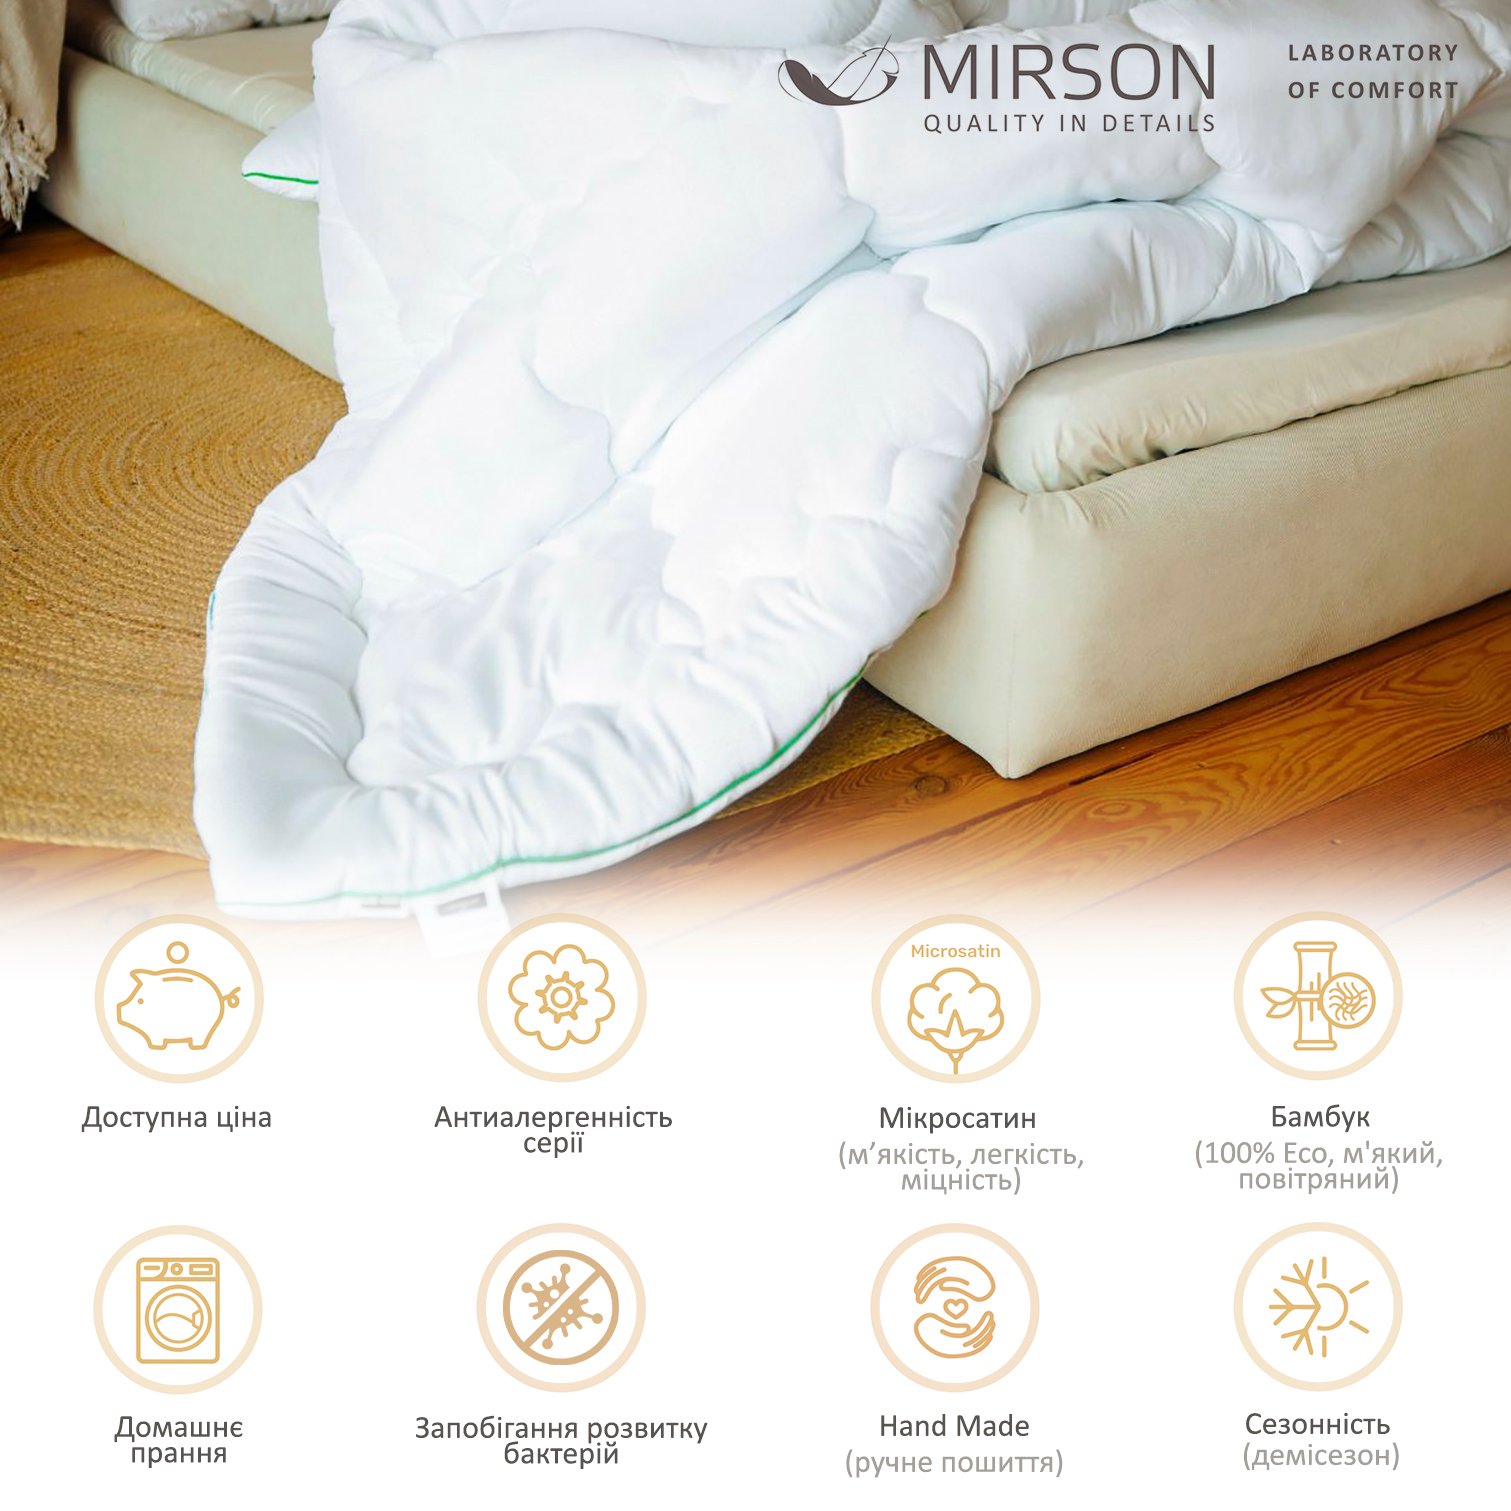 Ковдра бамбукова MirSon Eco Mikrosatin Hand Made №0442, демісезонна, 200x220 см, біла - фото 6